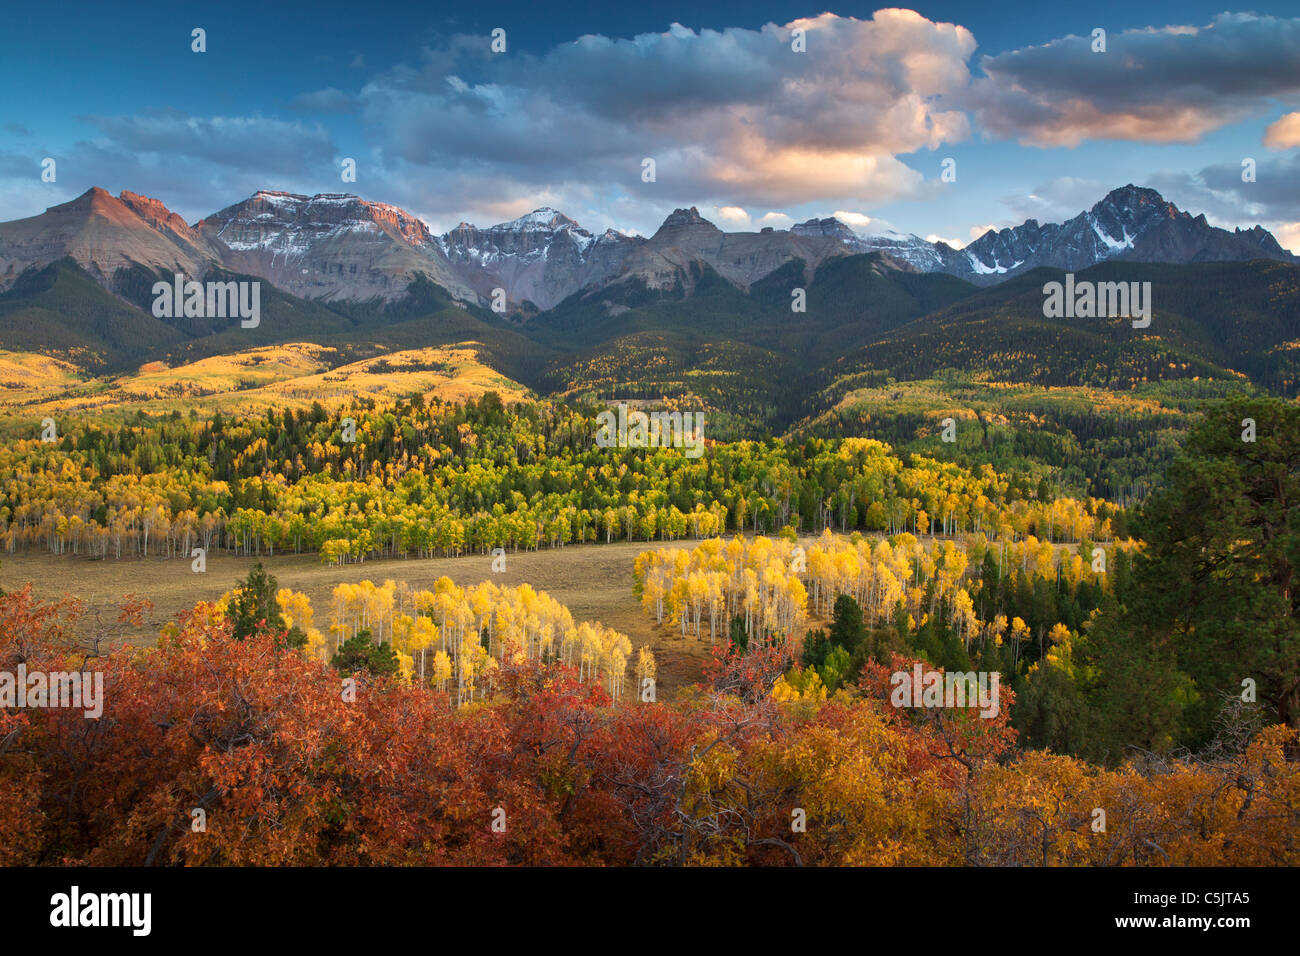 Couleurs d'automne et le Sneffels Range, montagnes de San Juan, au Colorado. Banque D'Images